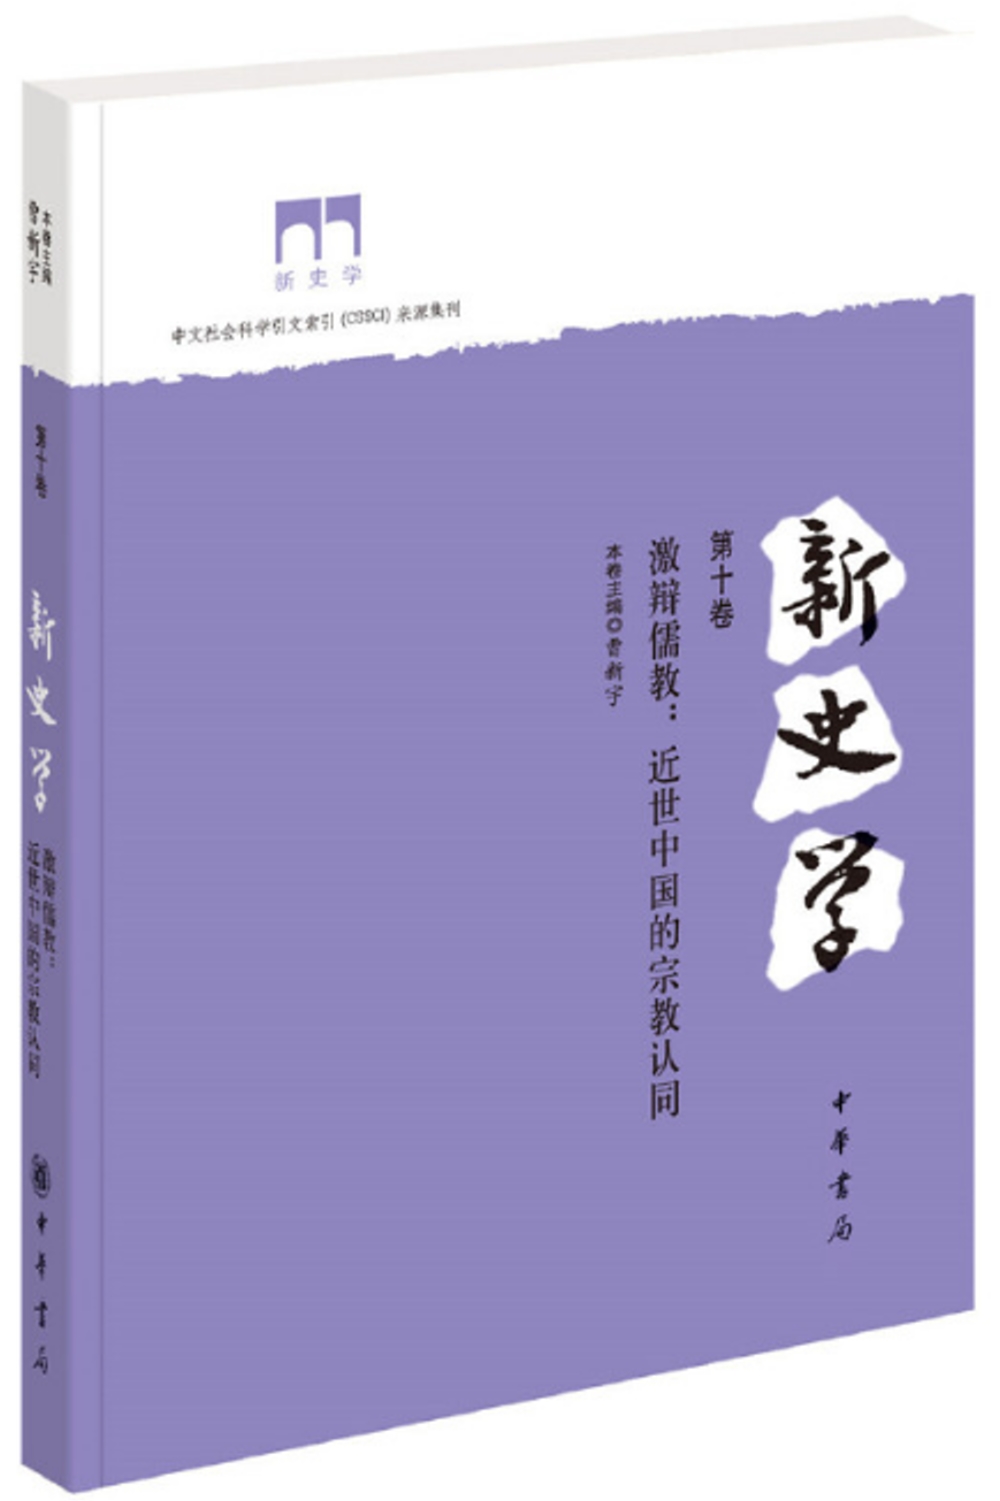 新史學（第十捲）：激辯儒教：近世中國的宗教認同